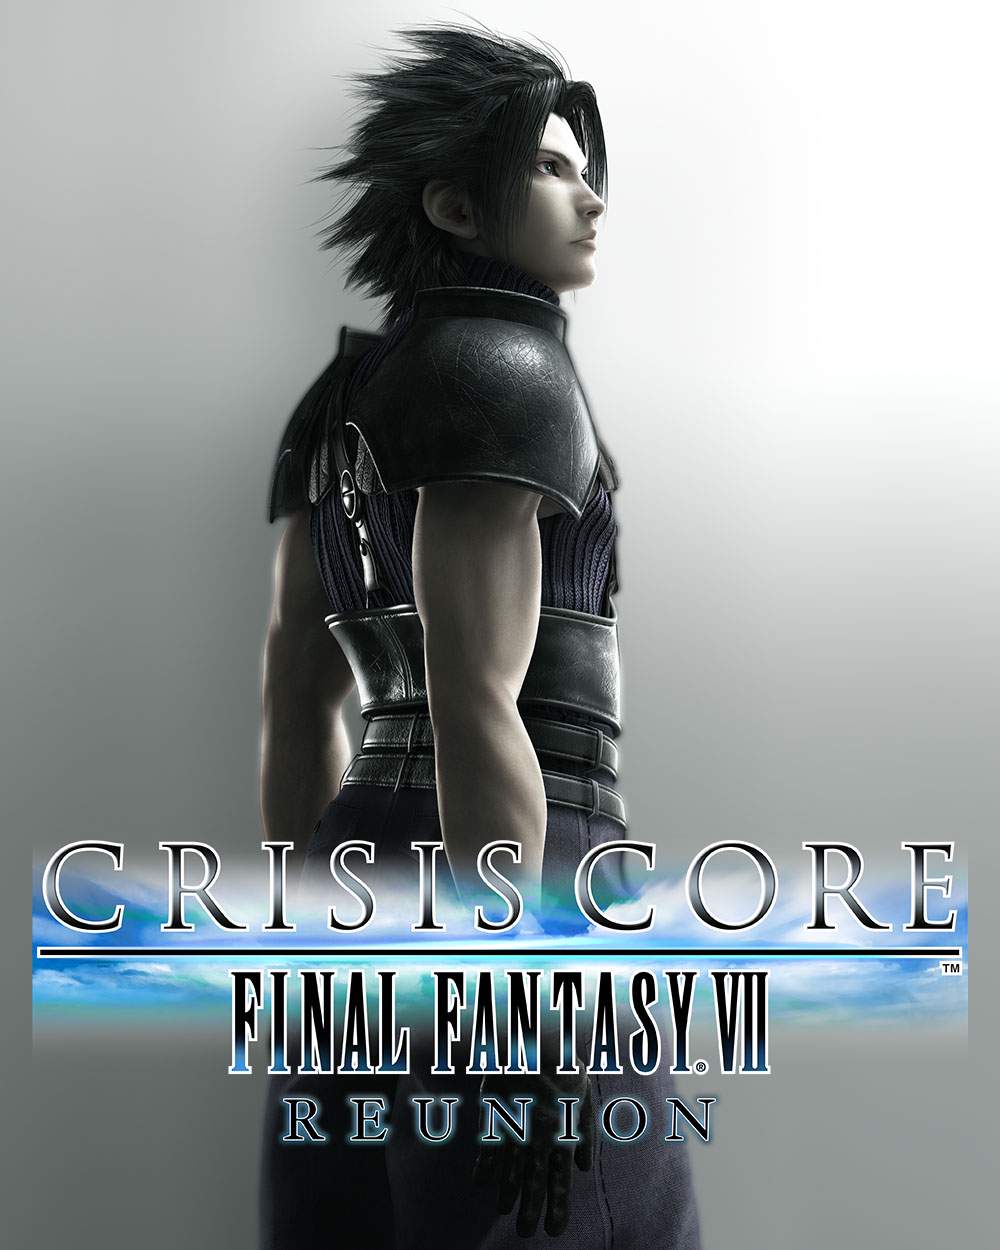 jaquette reduite de Crisis Core: Final Fantasy VII Reunion sur PC